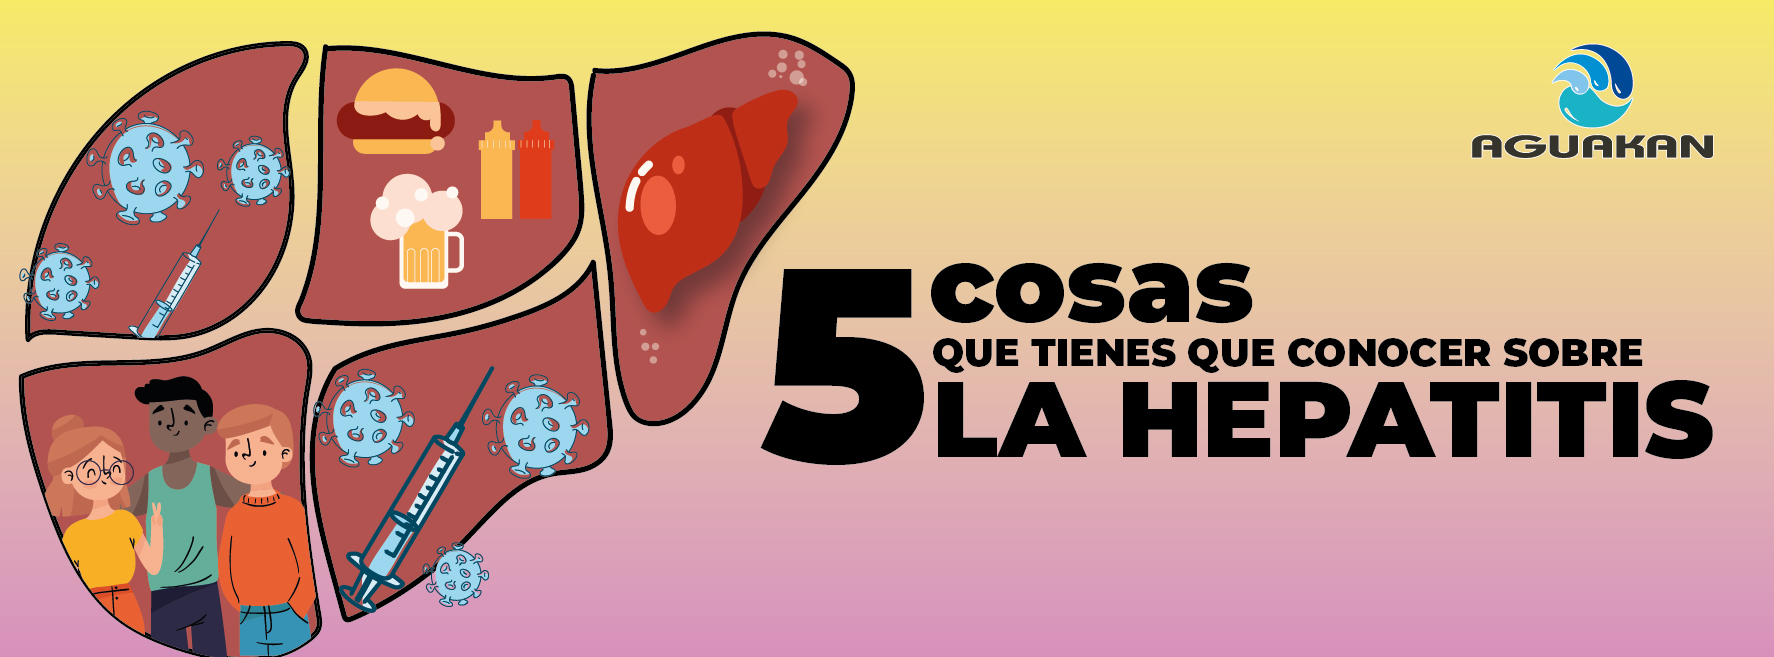 BIENESTAR AGUAKAN: ¡5 COSAS QUE TIENES QUE CONOCER SOBRE LA HEPATITIS!